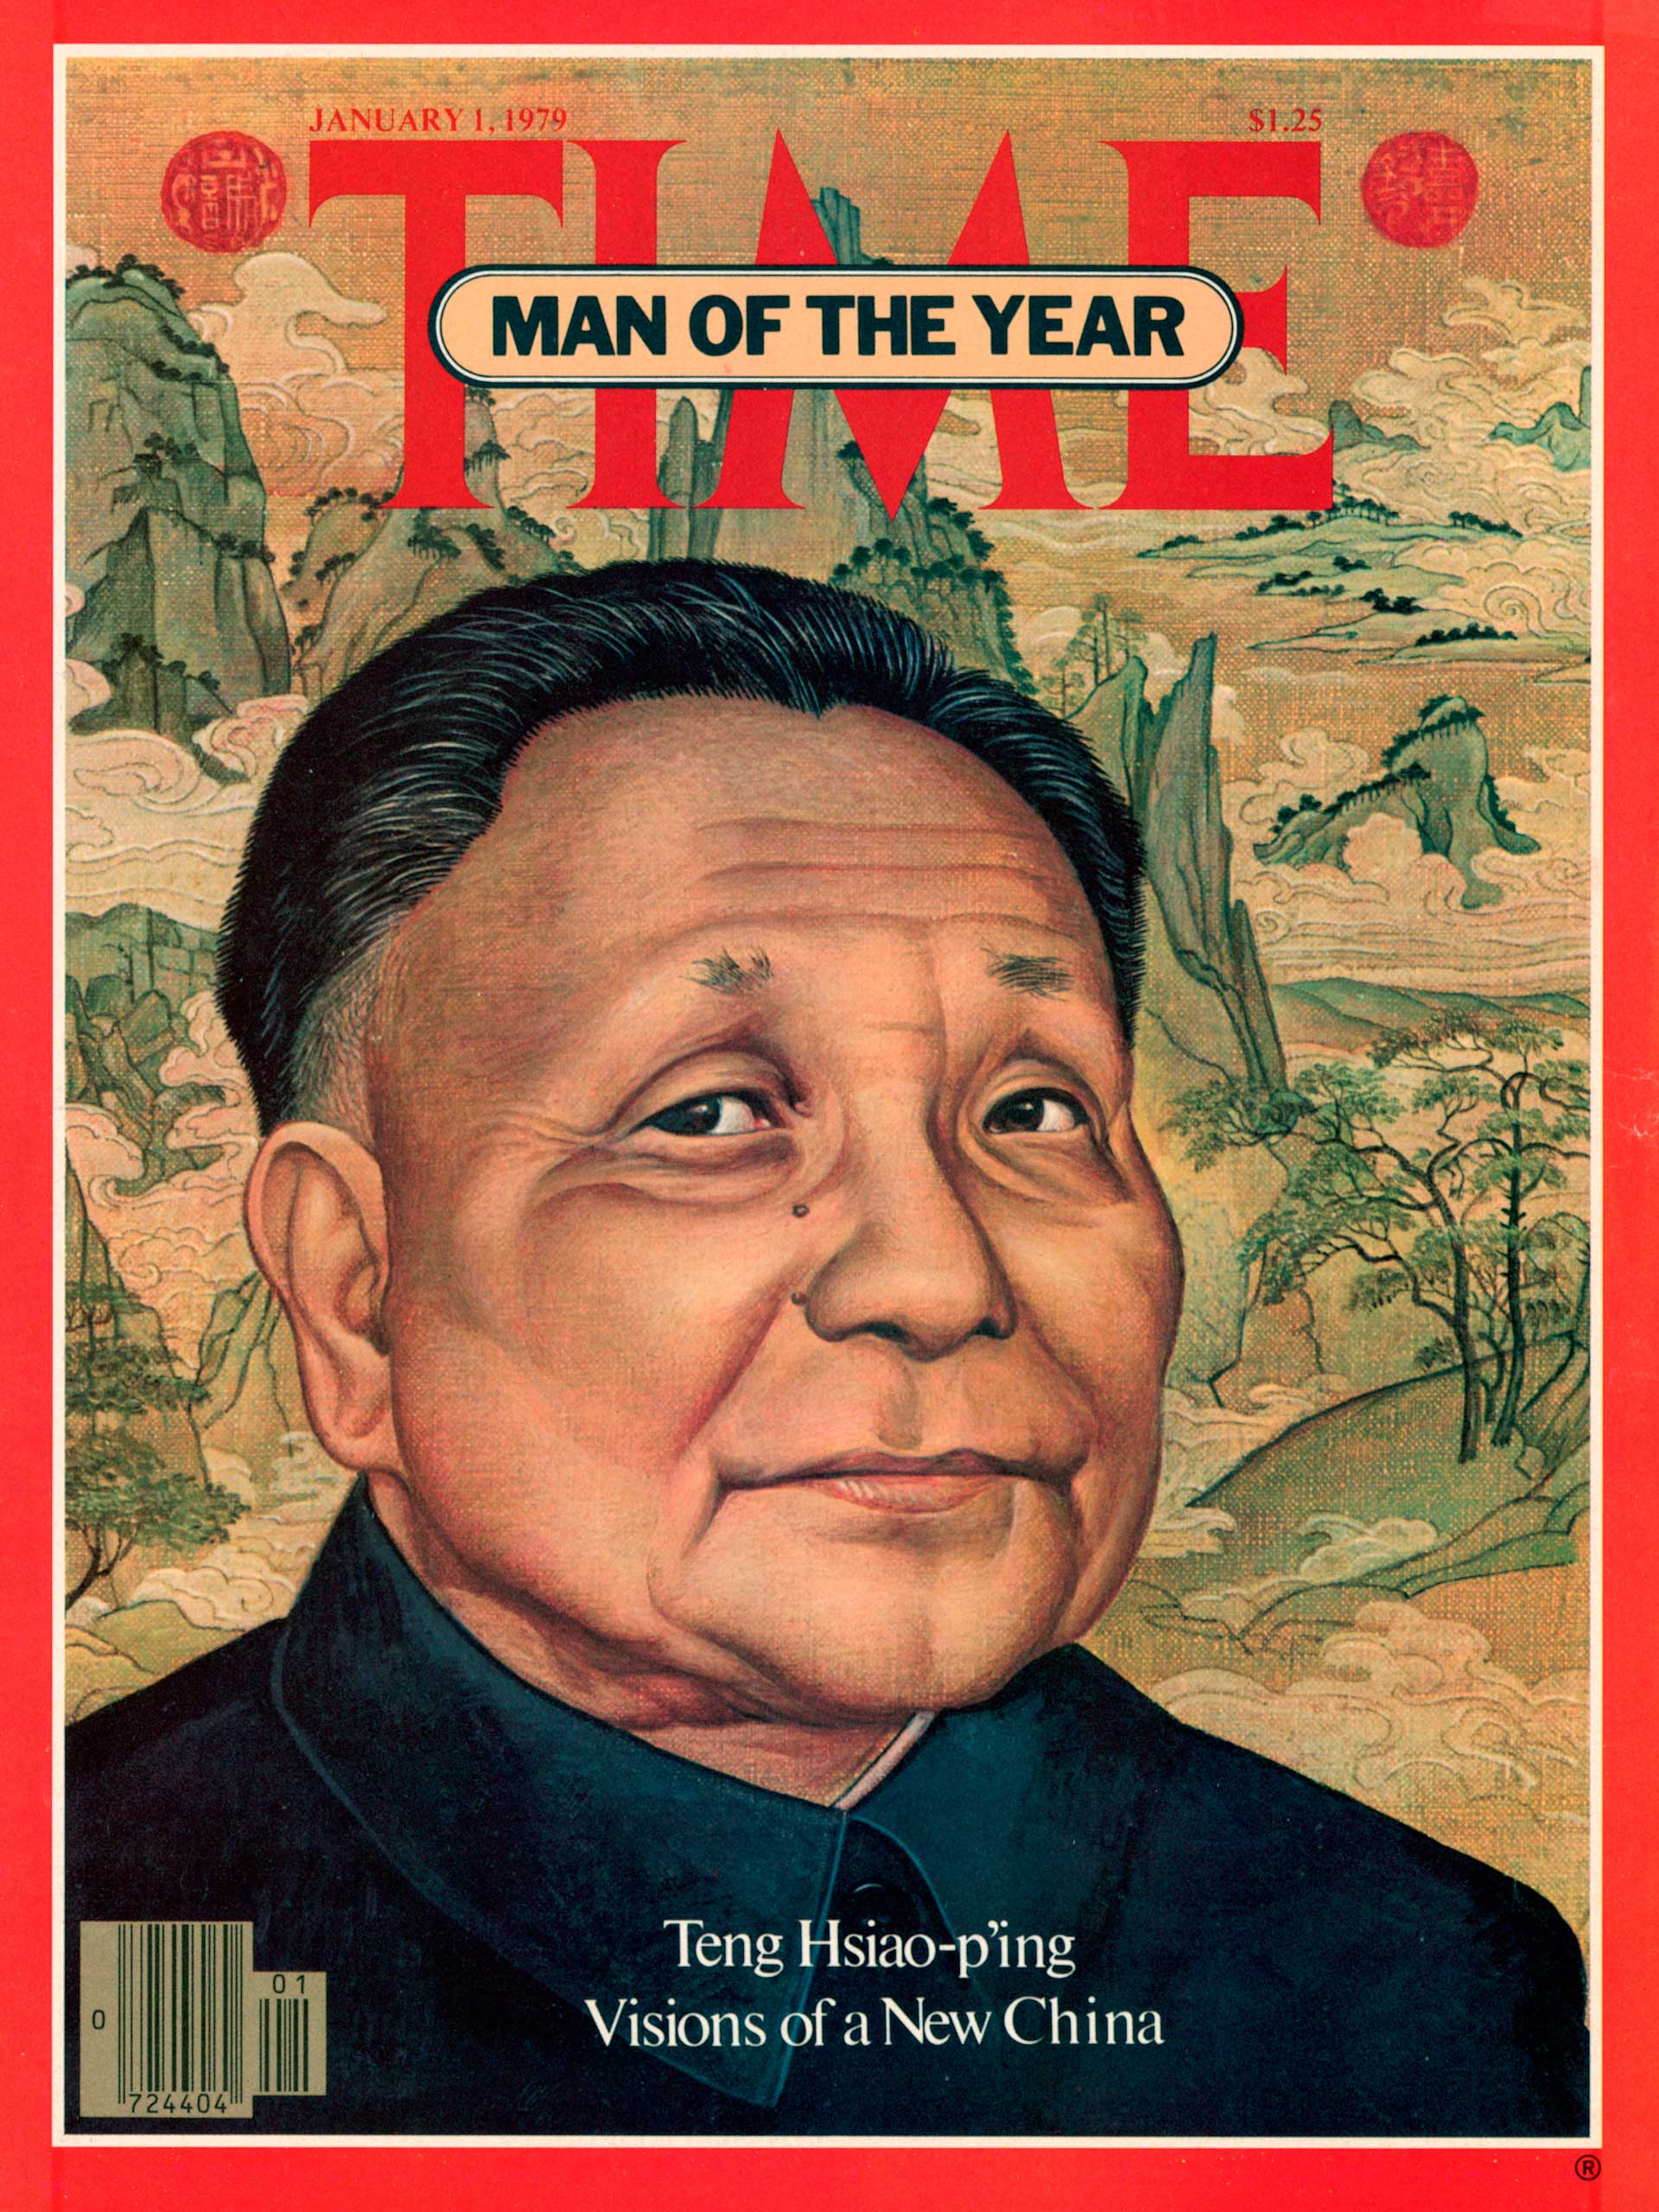 1978: Deng Xiaoping